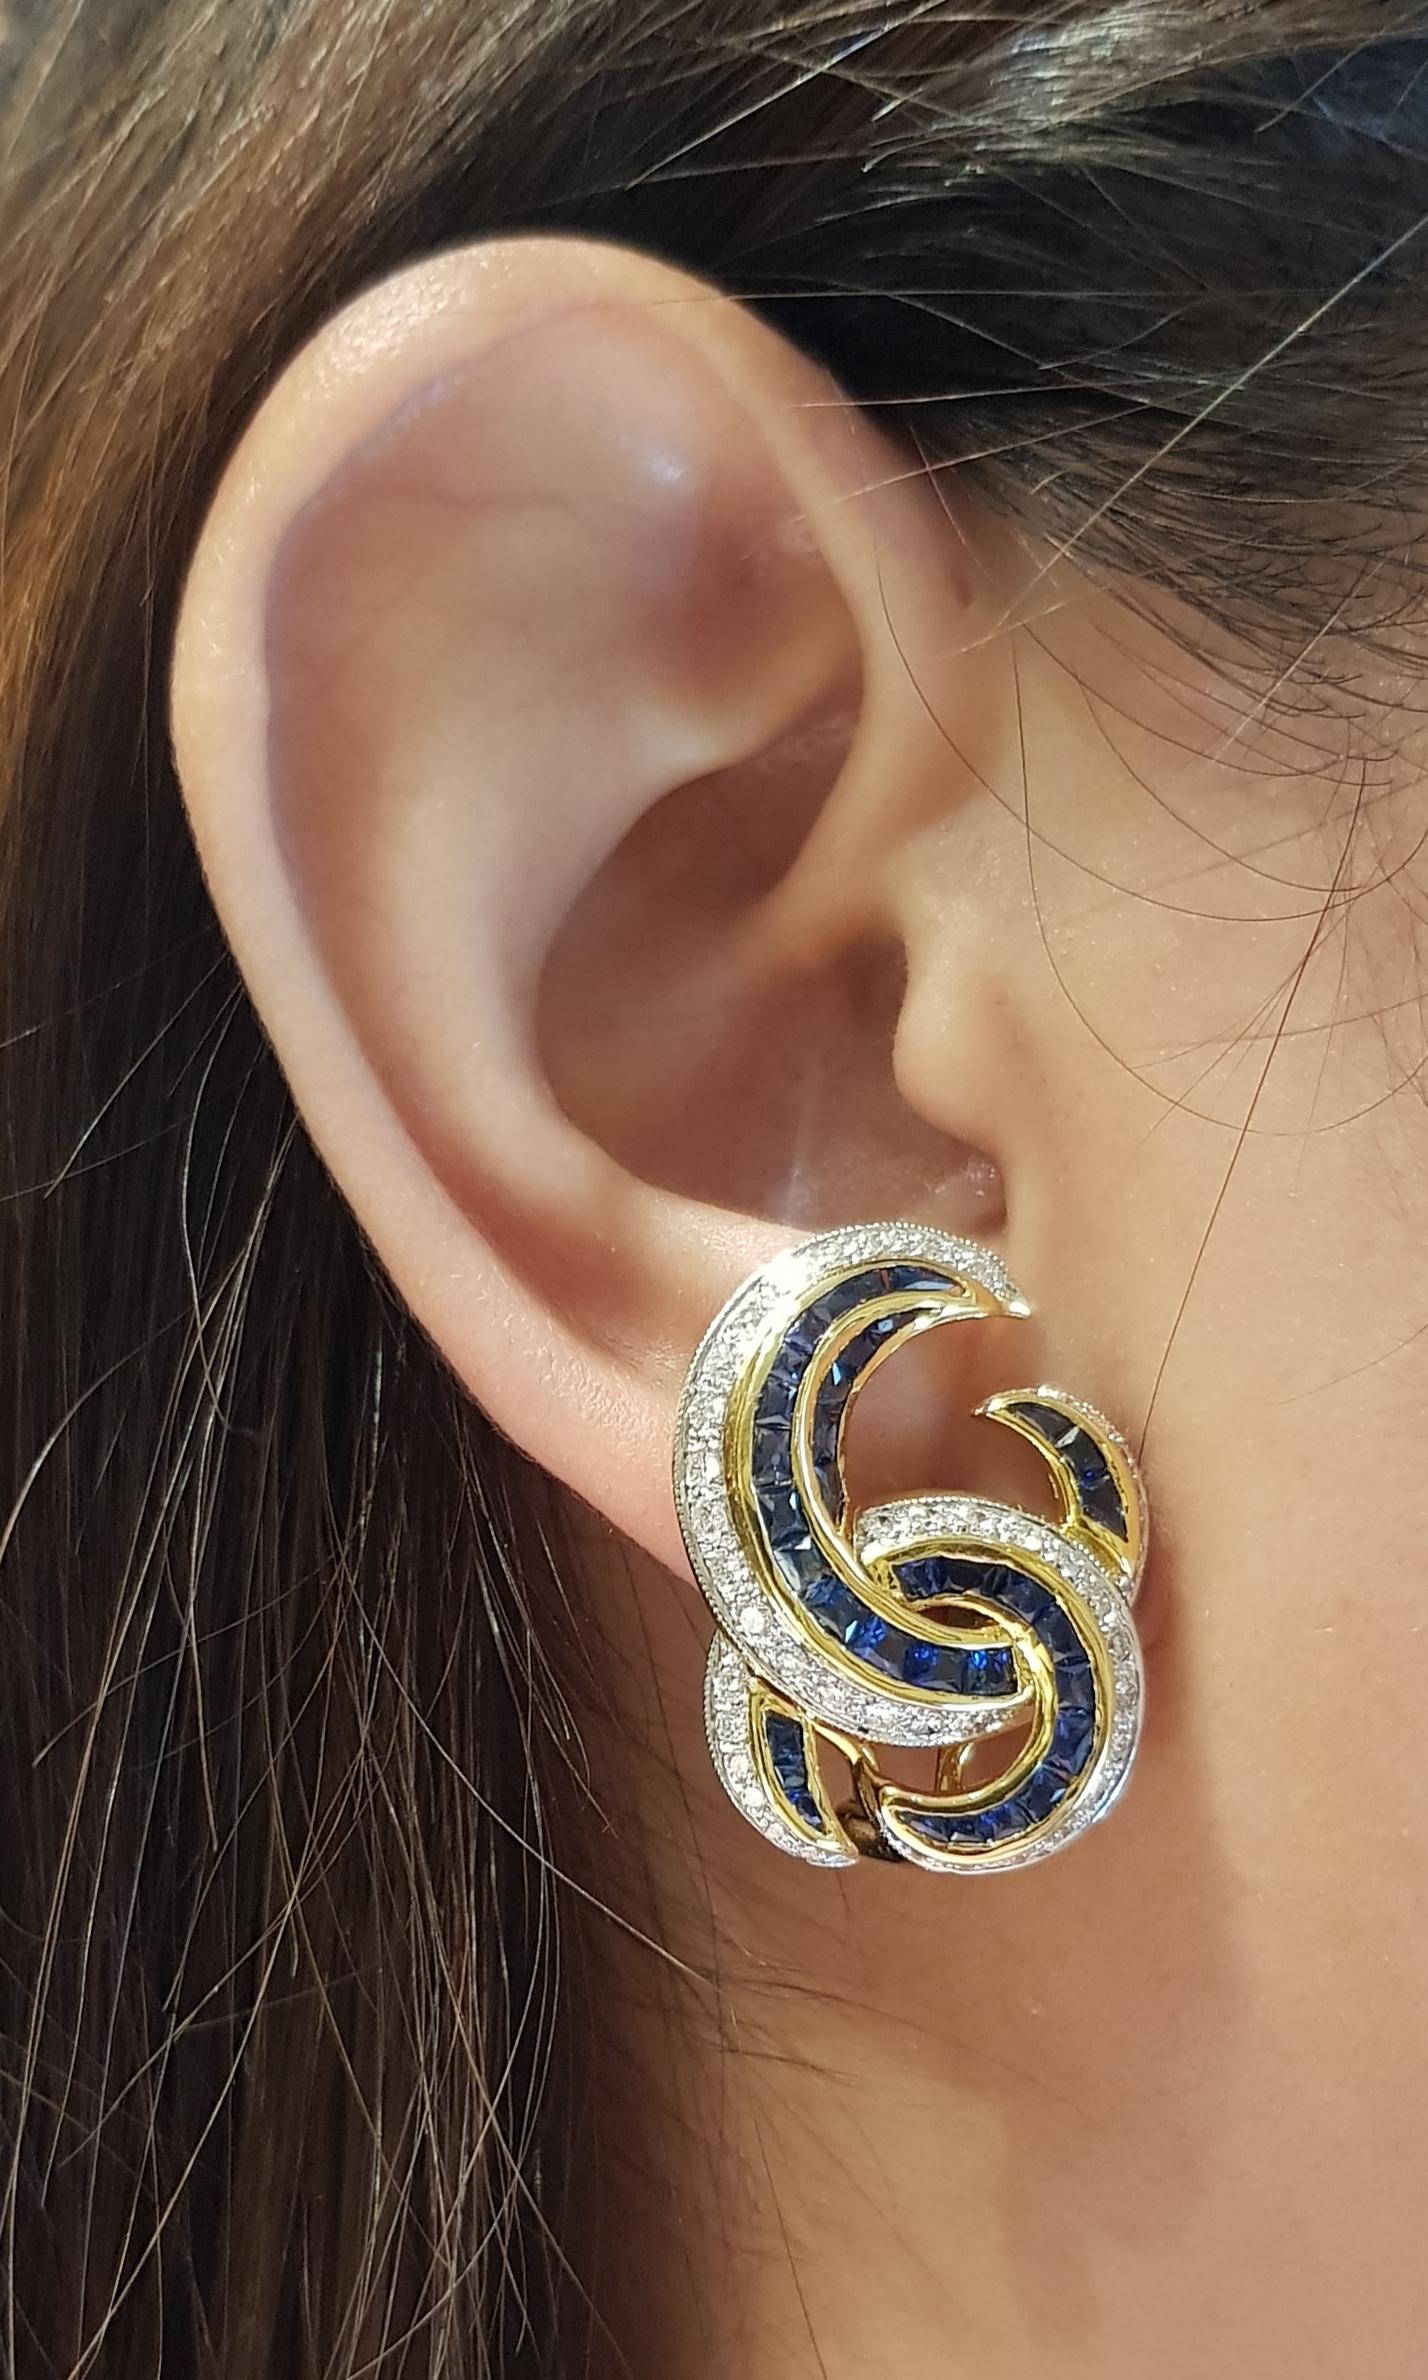 Boucles d'oreilles composées d'un saphir bleu de 7,50 carats et d'un diamant de 1,04 carat sertis dans une monture en or 18 carats

Largeur :  2.1 cm 
Longueur : 2,7 cm
Poids total : 17,82 grammes

